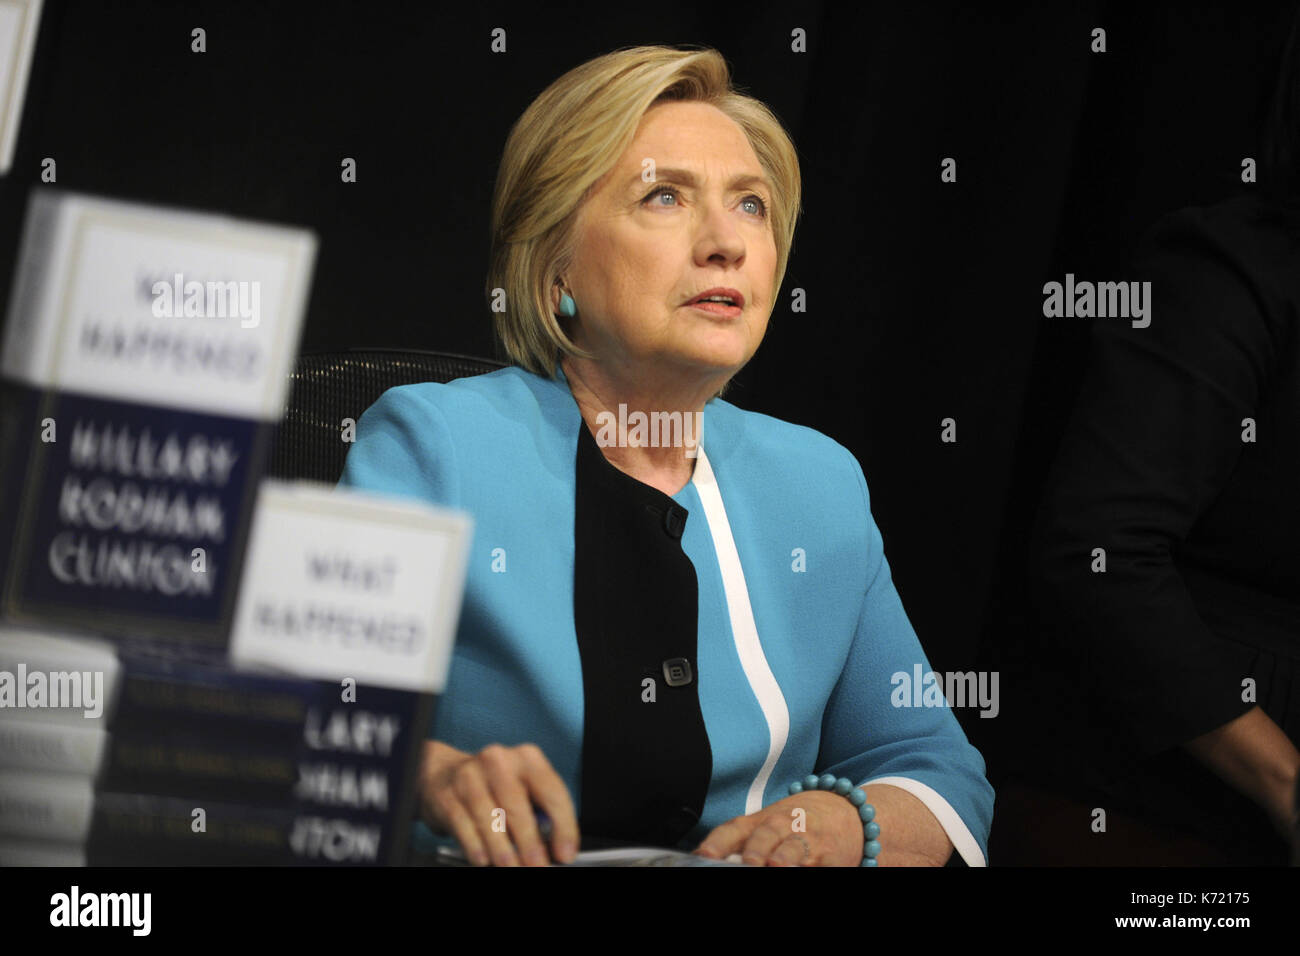 Ciudad de Nueva York. 12 de septiembre de 2017. Hillary Clinton firma copias de su libro, "What Say" en Barnes & Noble Union Square el 12 de septiembre de 2017 en la ciudad de Nueva York. | Verwendung weltweit/Picture Alliance crédito: dpa/Alamy Live News Foto de stock